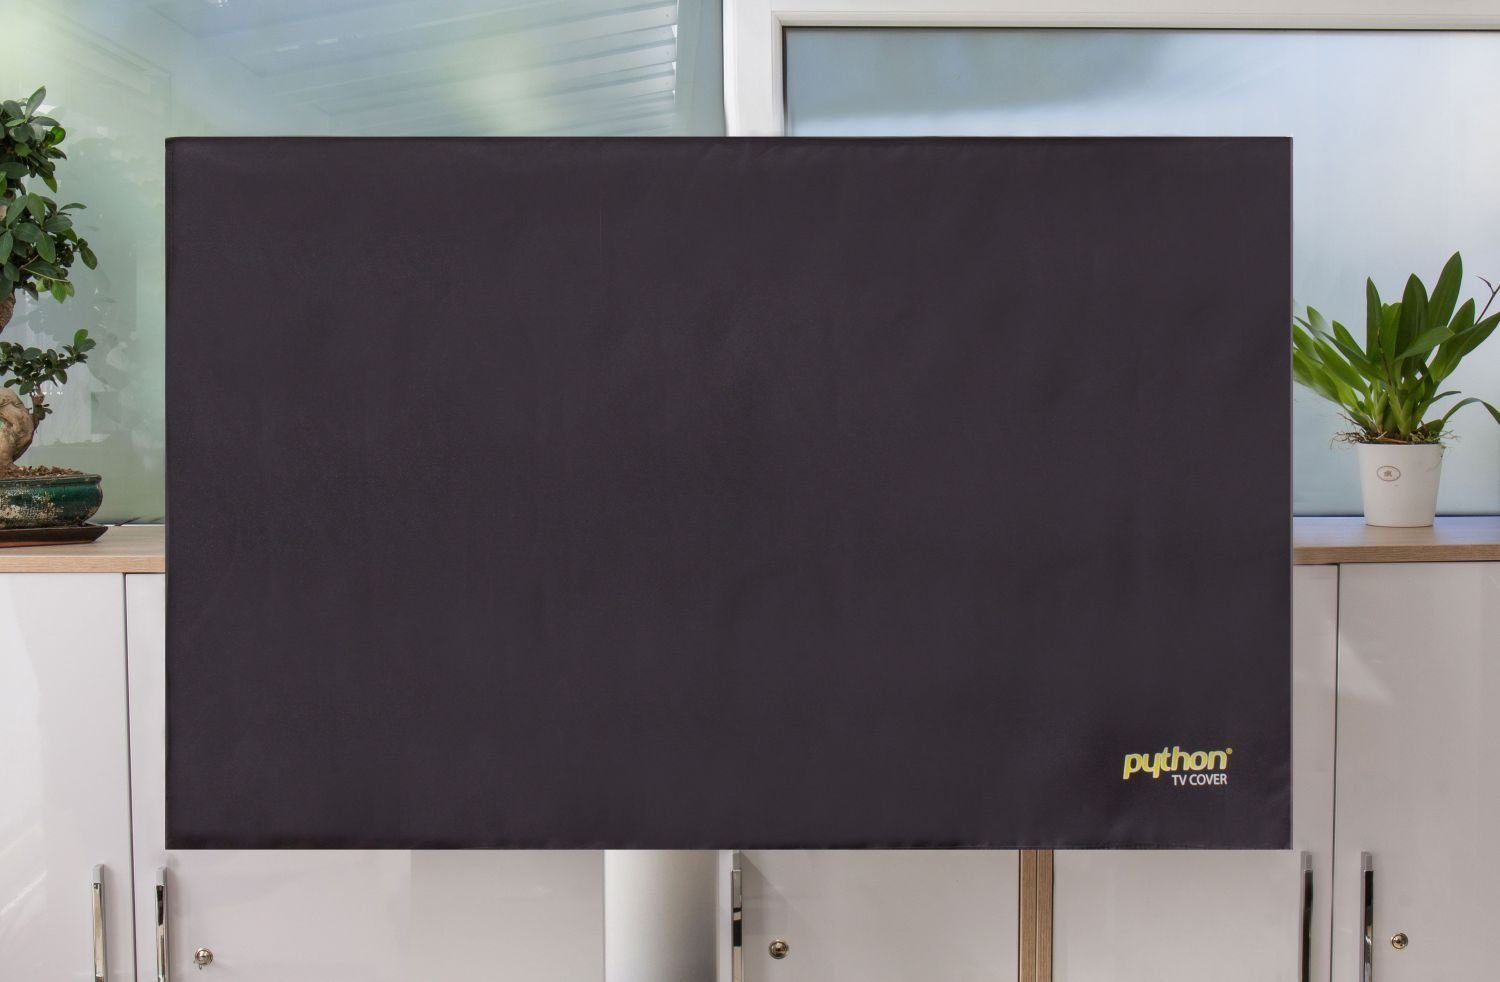 Monitor,78x48 – Universalschutz Series 28“ wetterfester TV-Cover Indoor/Outdoor bis TV-Wandhalterung TV 32“ für Ihr cm, Python oder